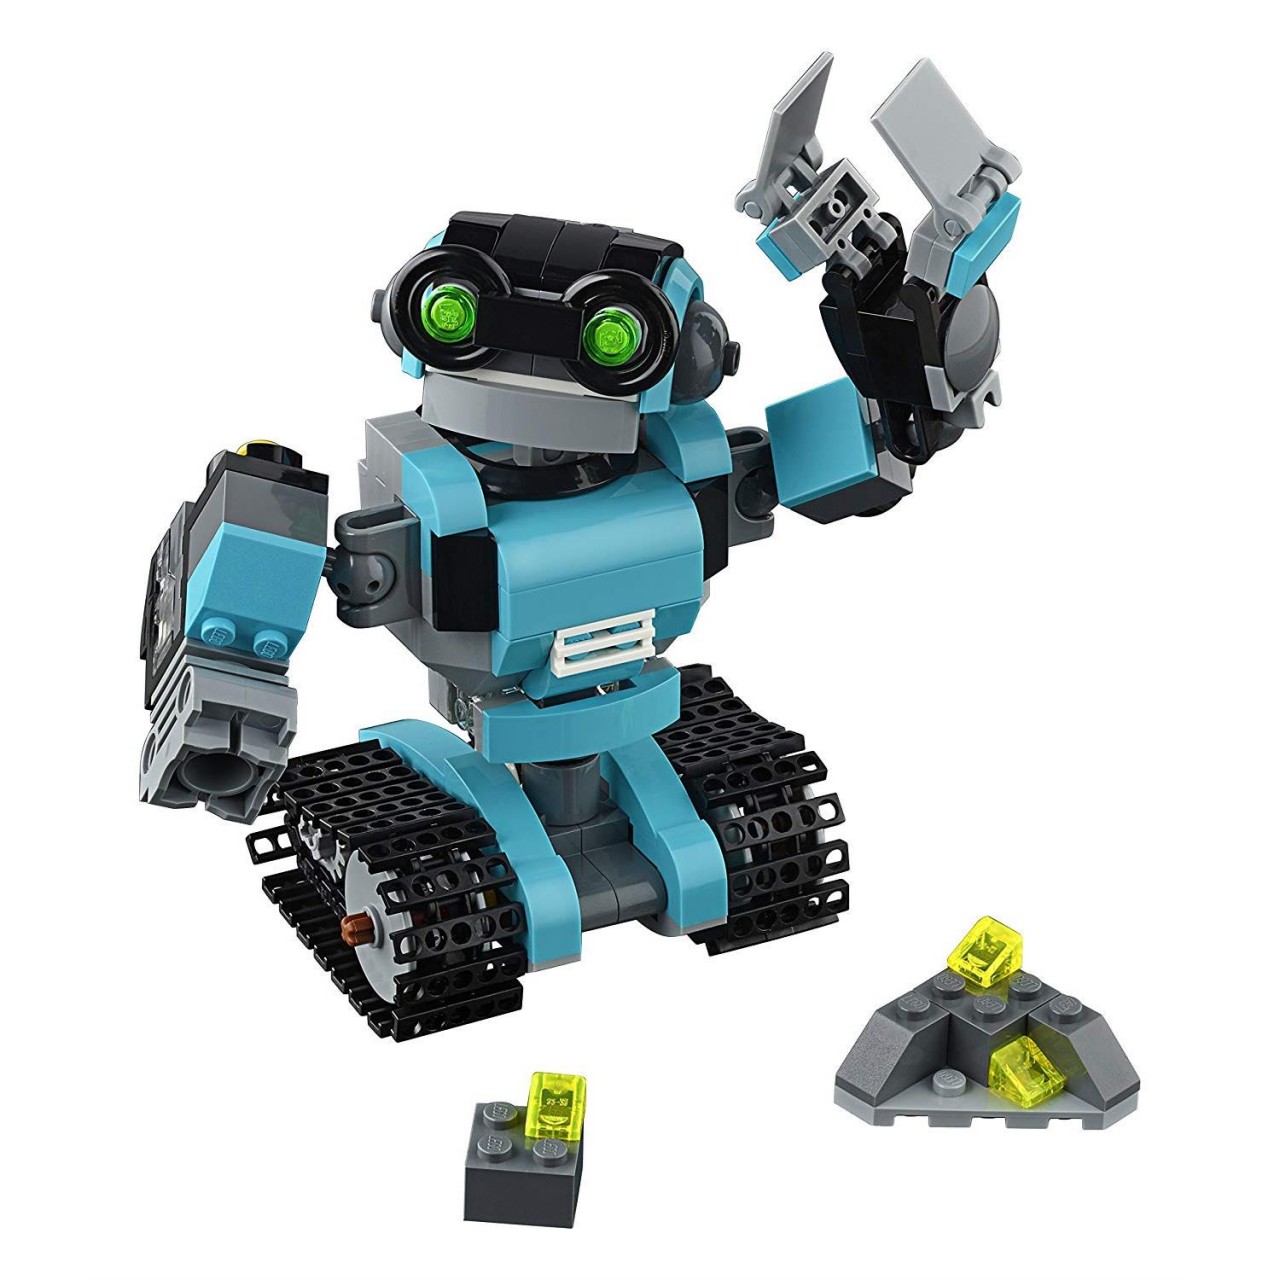 LEGO CREATOR 31062 Forschungsroboter